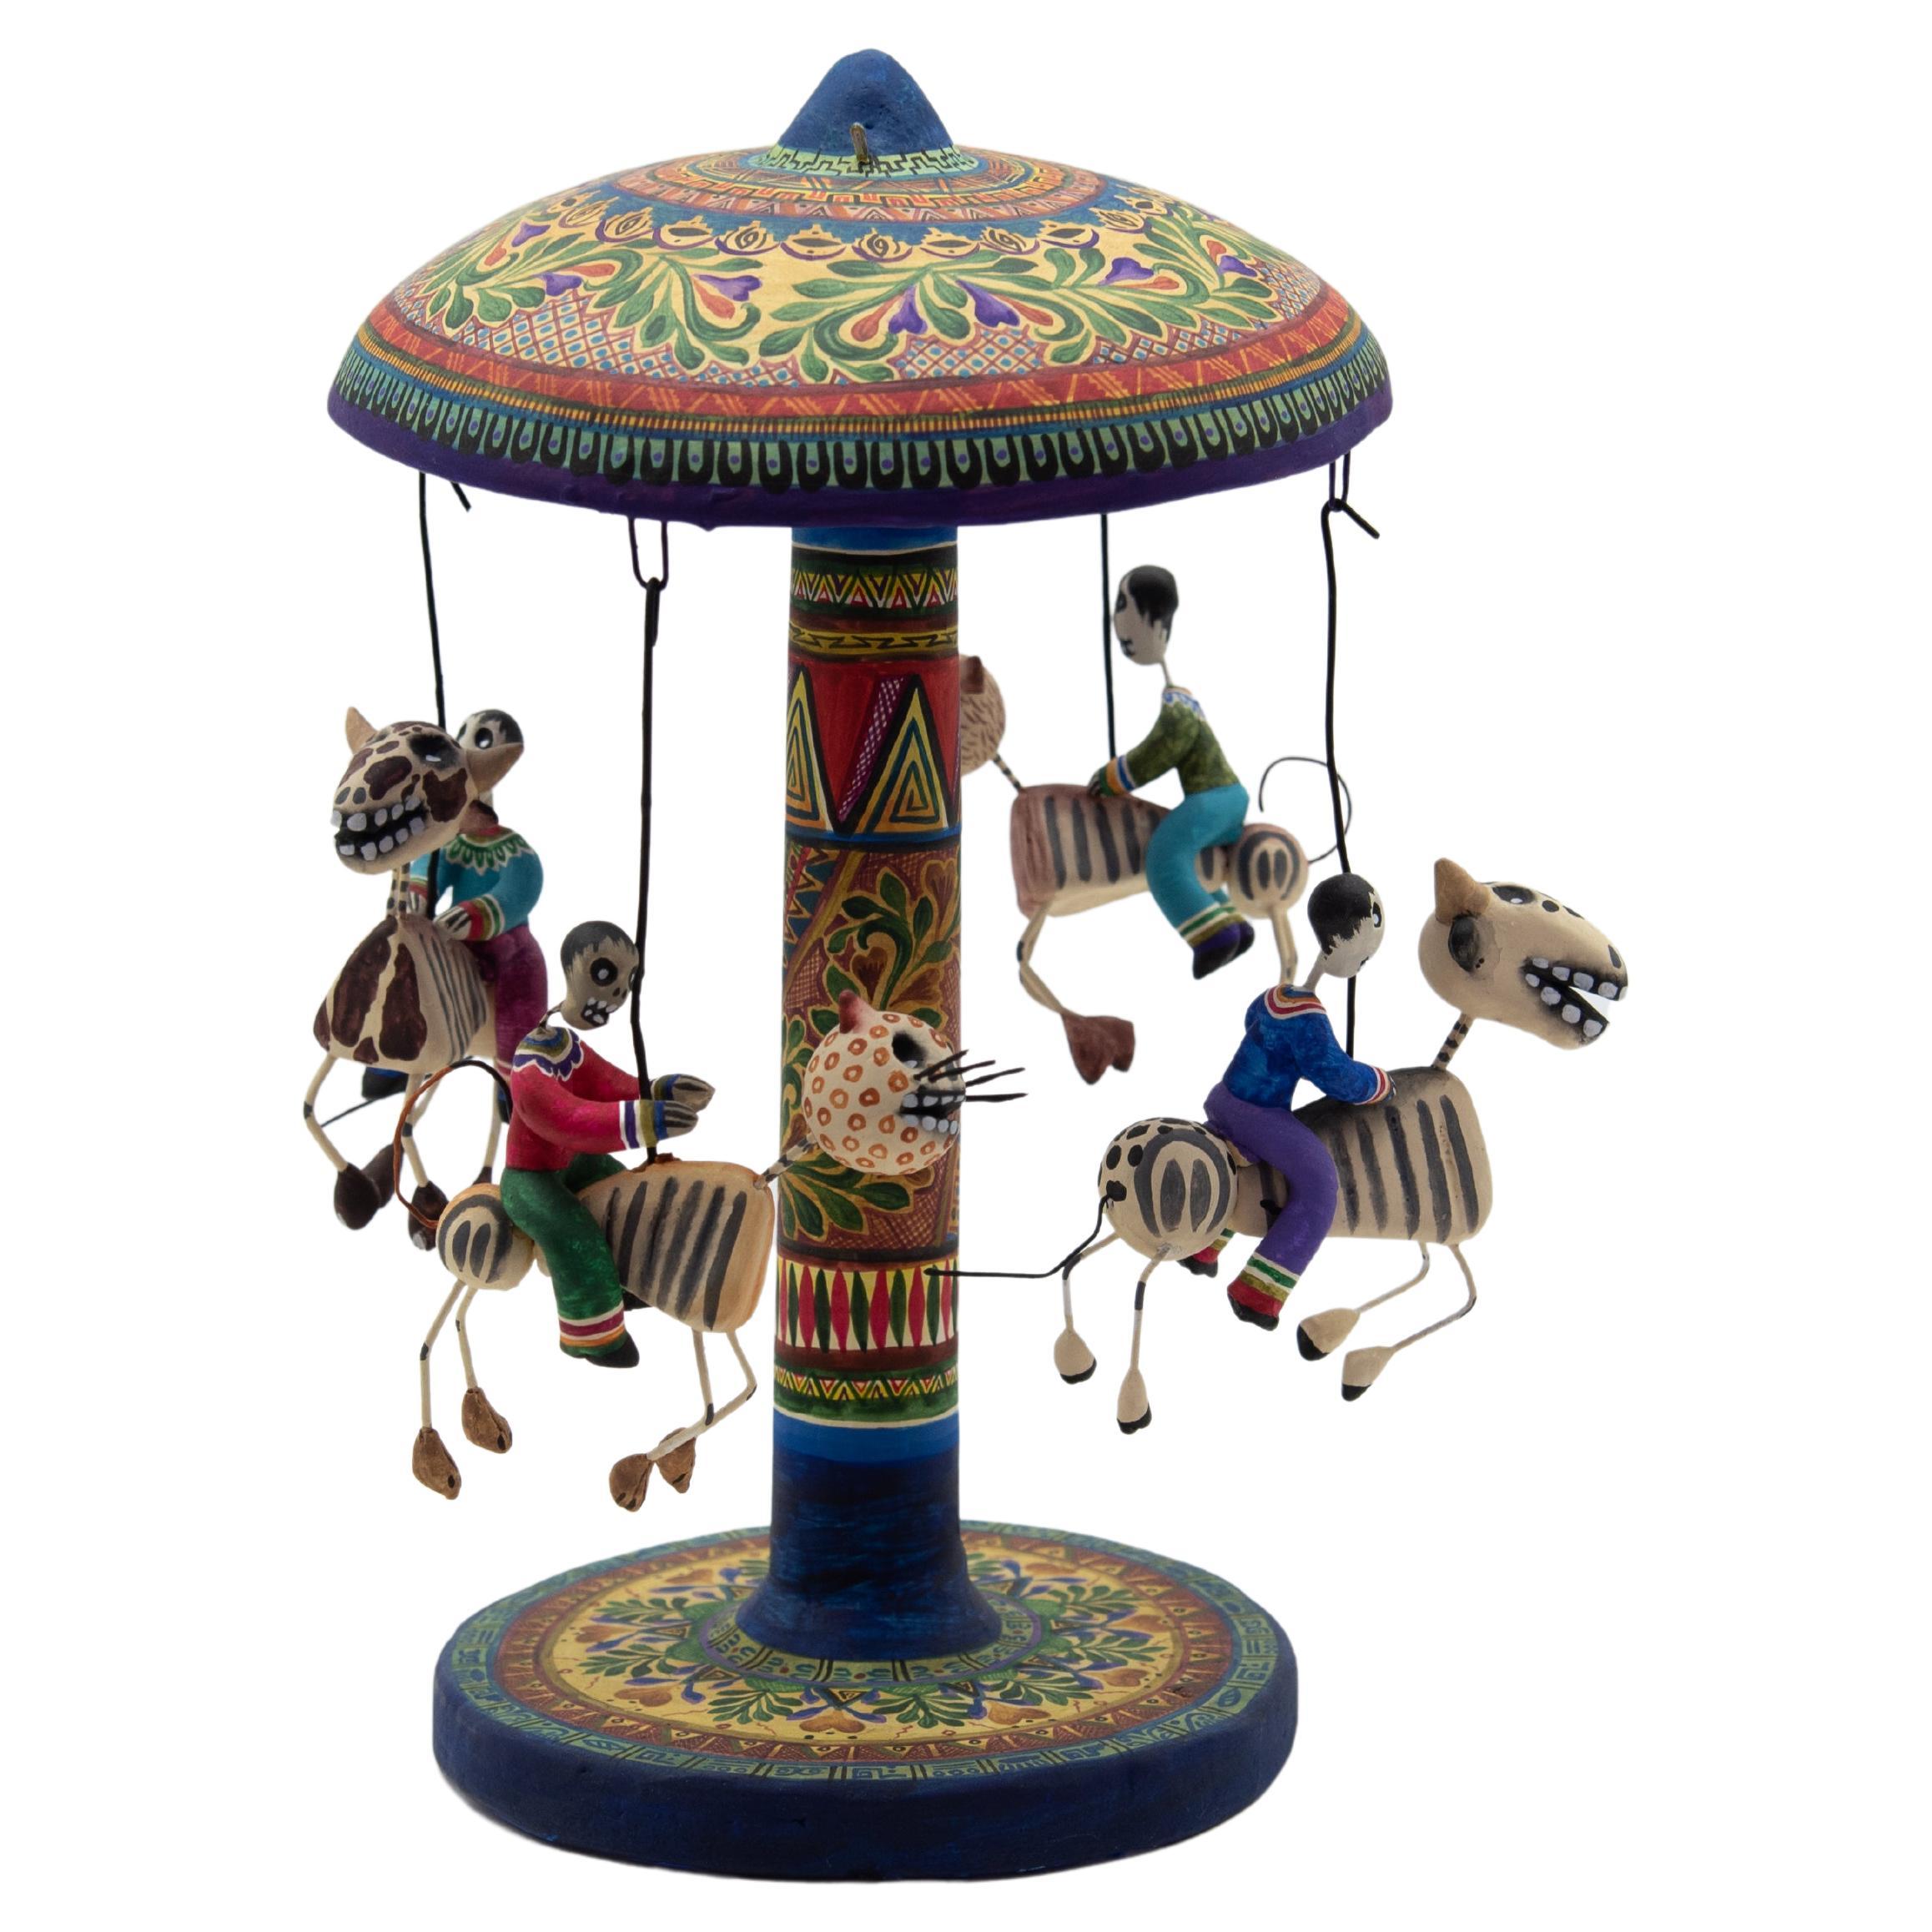 Carousel Day of the Dead, céramique d'art populaire mexicain par Familia Castillo 